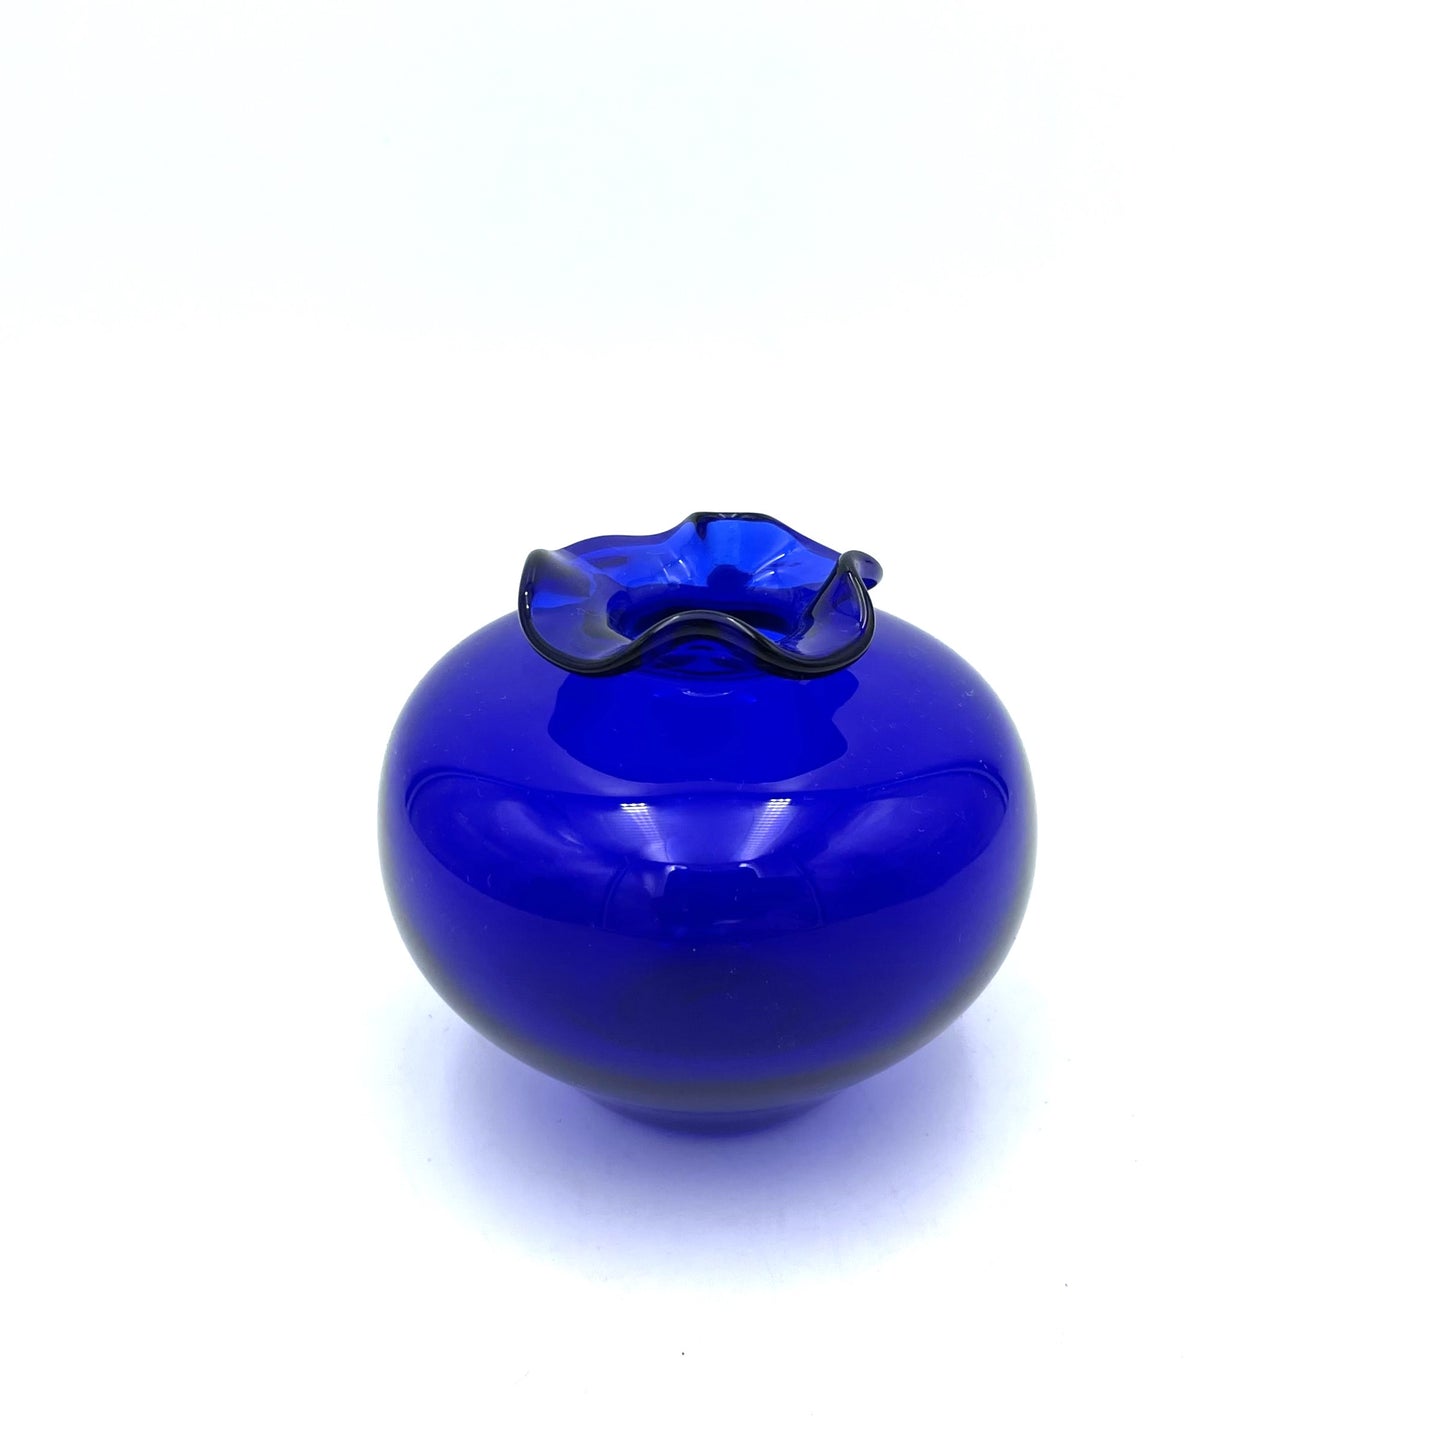 Blue Stephen Morris Art Glass Vase - 8cm